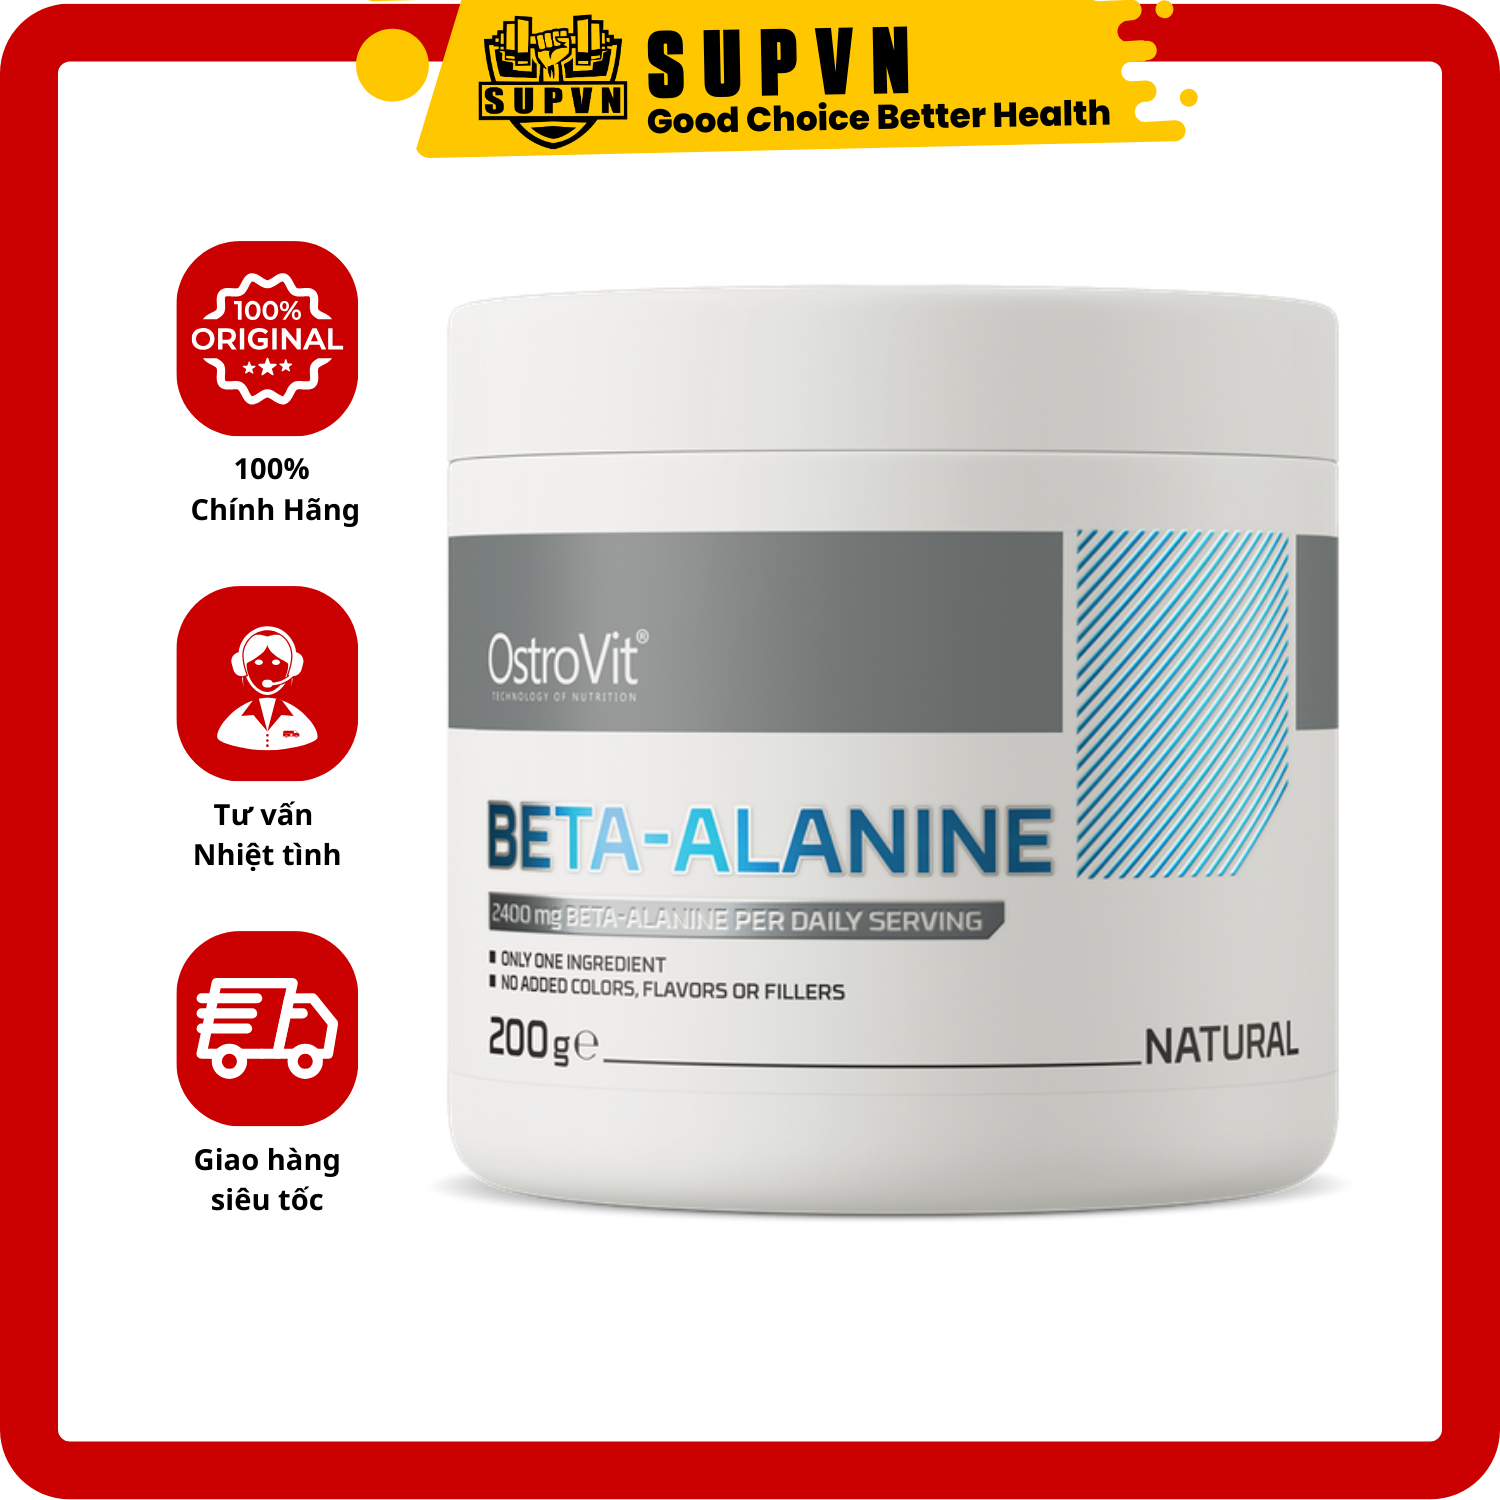 Ostrovit Beta Alanine 200g - Đơn chất hỗ trợ tăng sức mạnh sức bền trong tập luyện